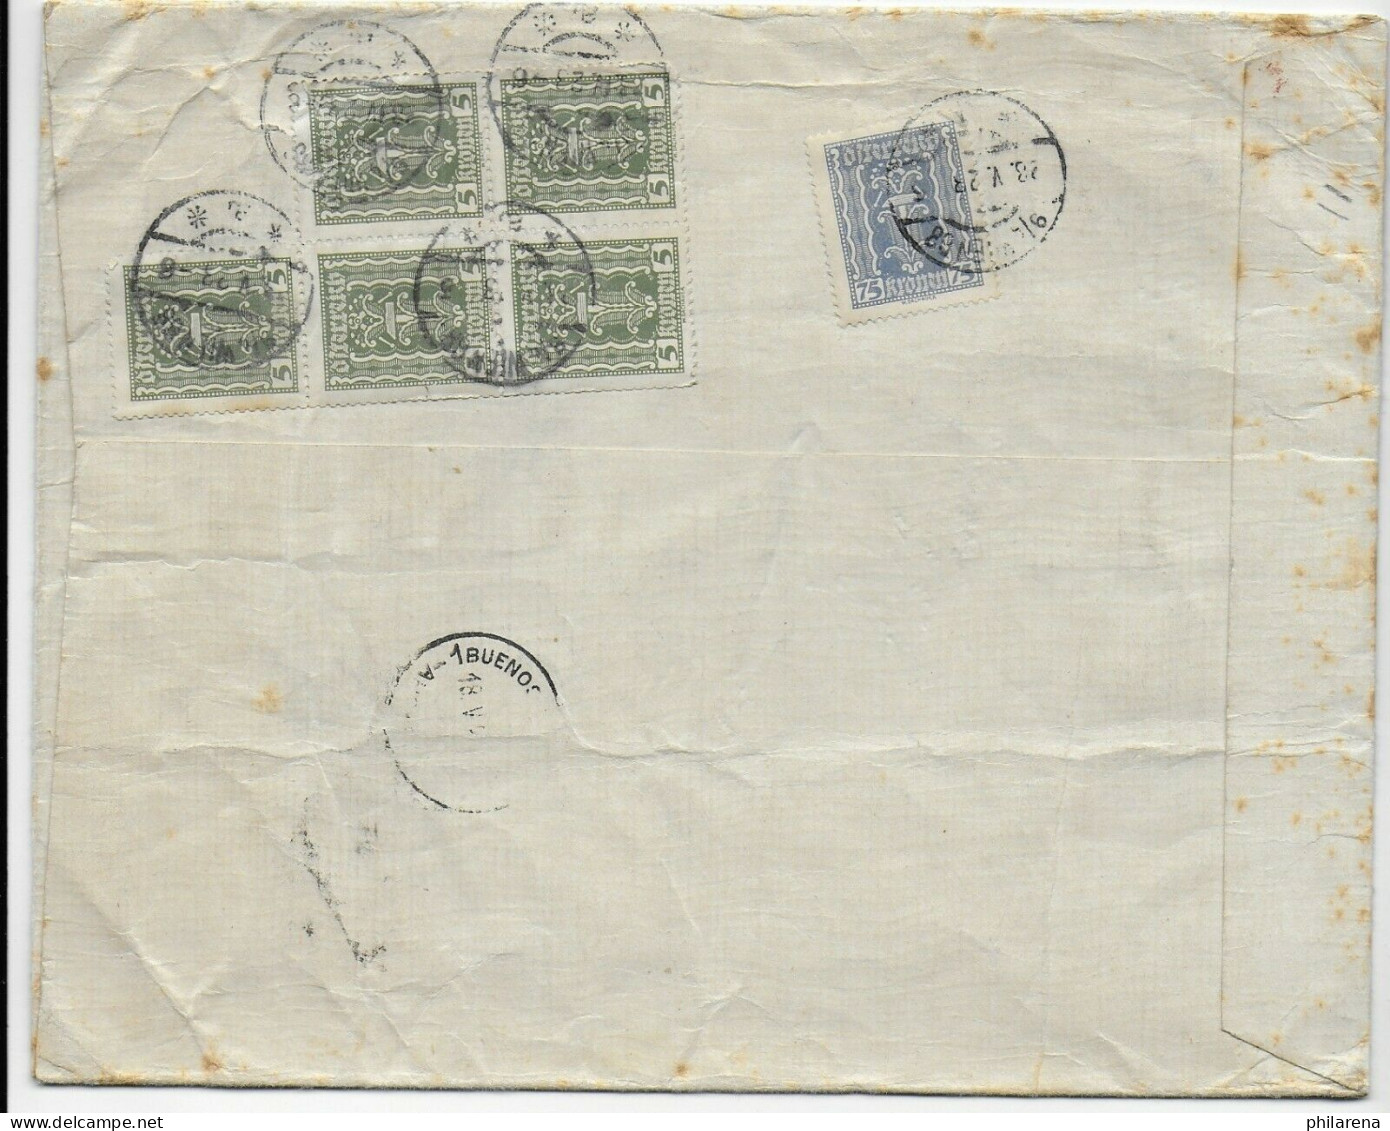 Warenprobe Ohne Wert, Einschreiben Wien 1923 Nach Argentinien - Covers & Documents